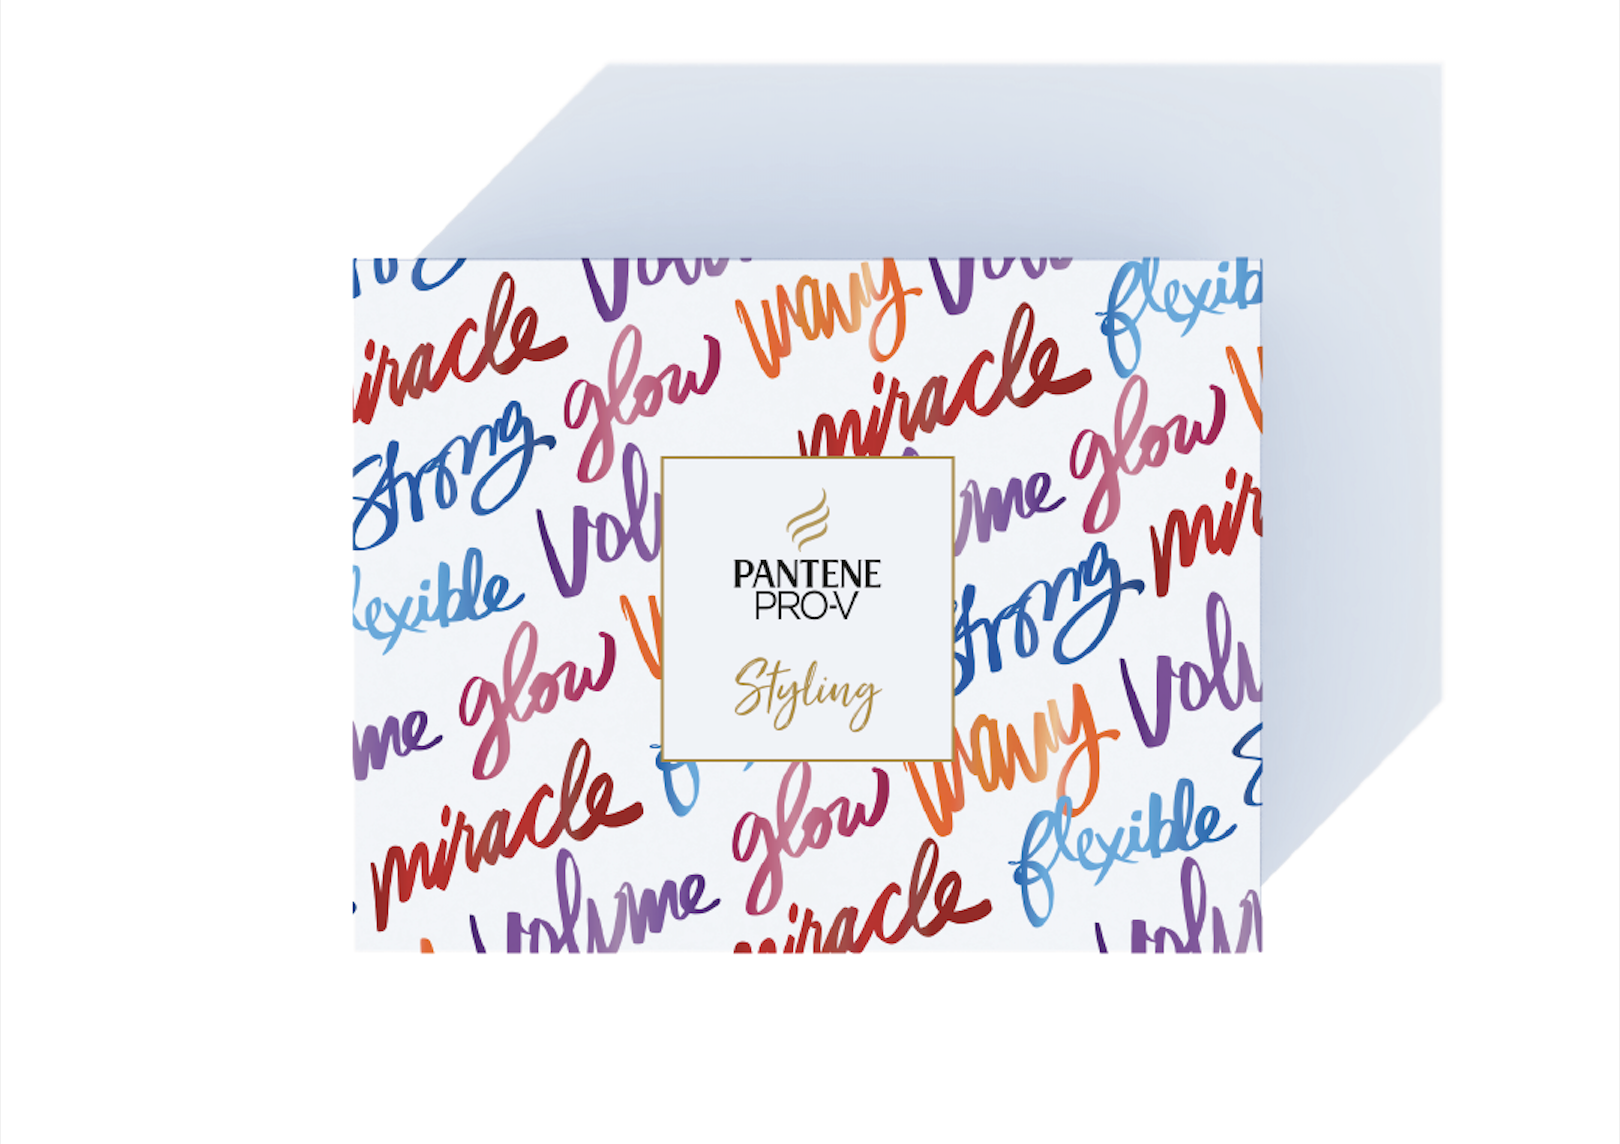 Pantene Pro-V PR Box